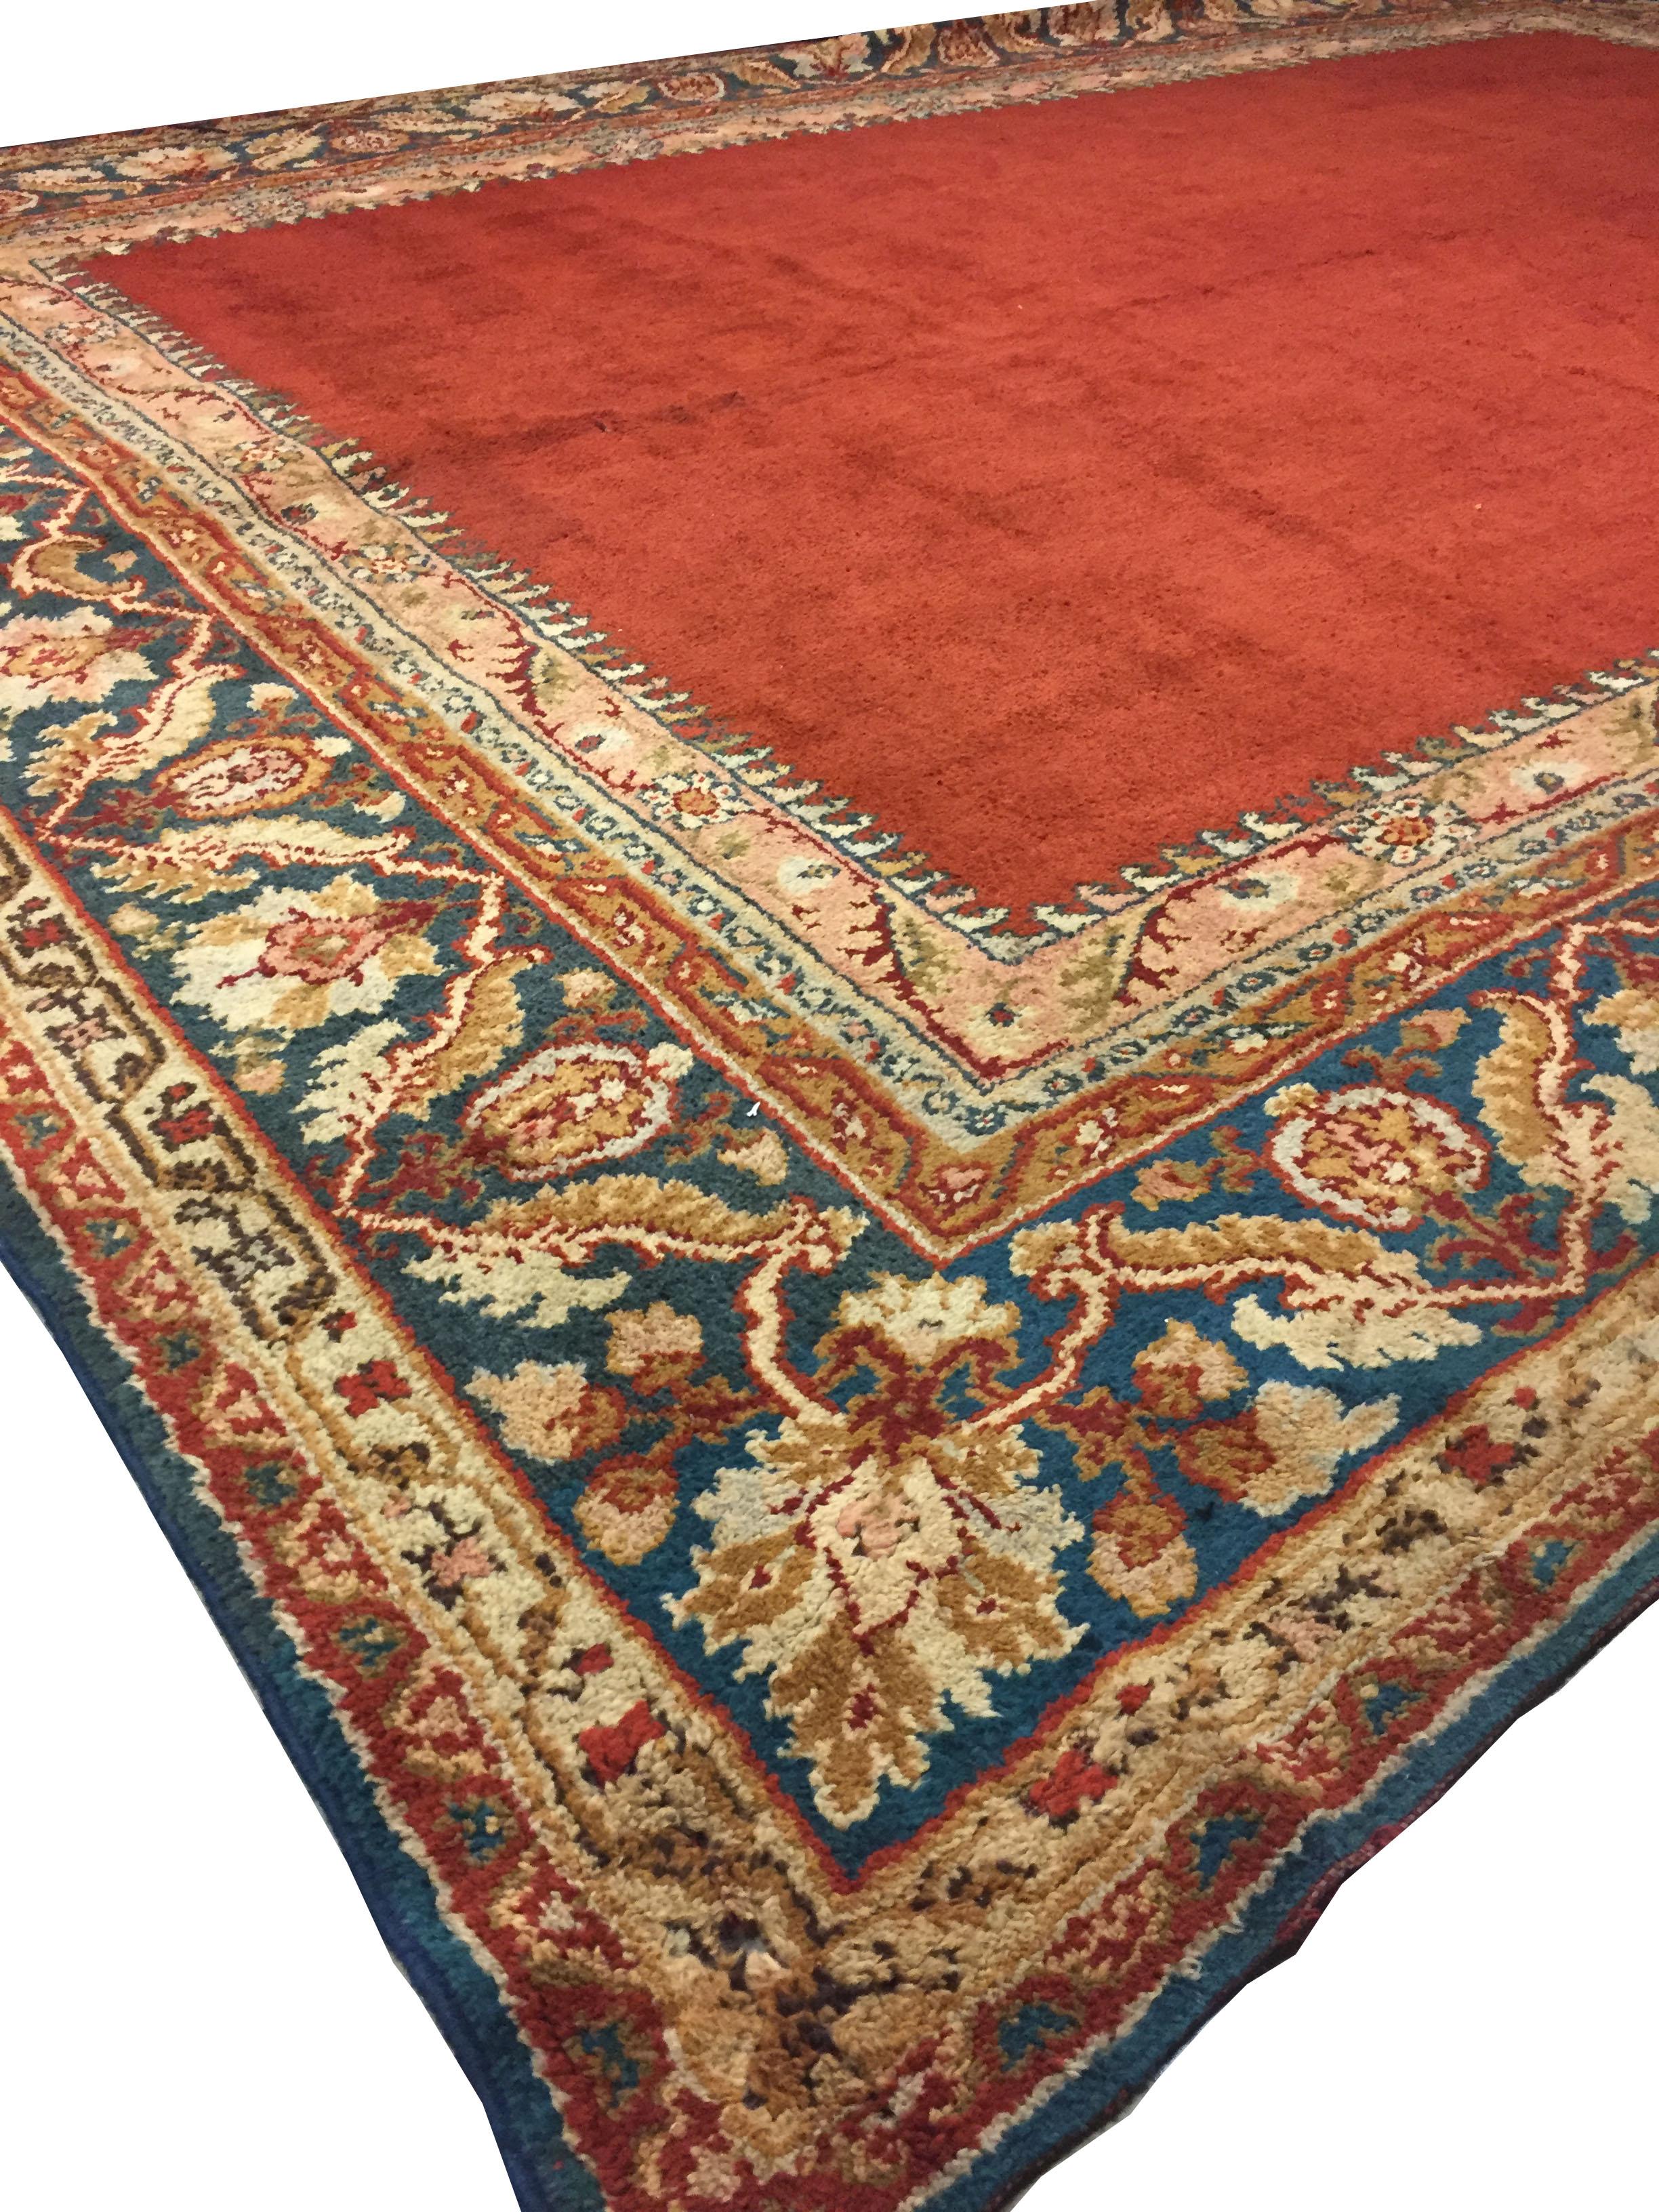 Großer europäischer Oushak-Design-Teppich. Ein türkischer Teppich im Oushak-Stil, handgeknüpft in Europa, wahrscheinlich in Spanien. Maße: 12'4 x 16'1.